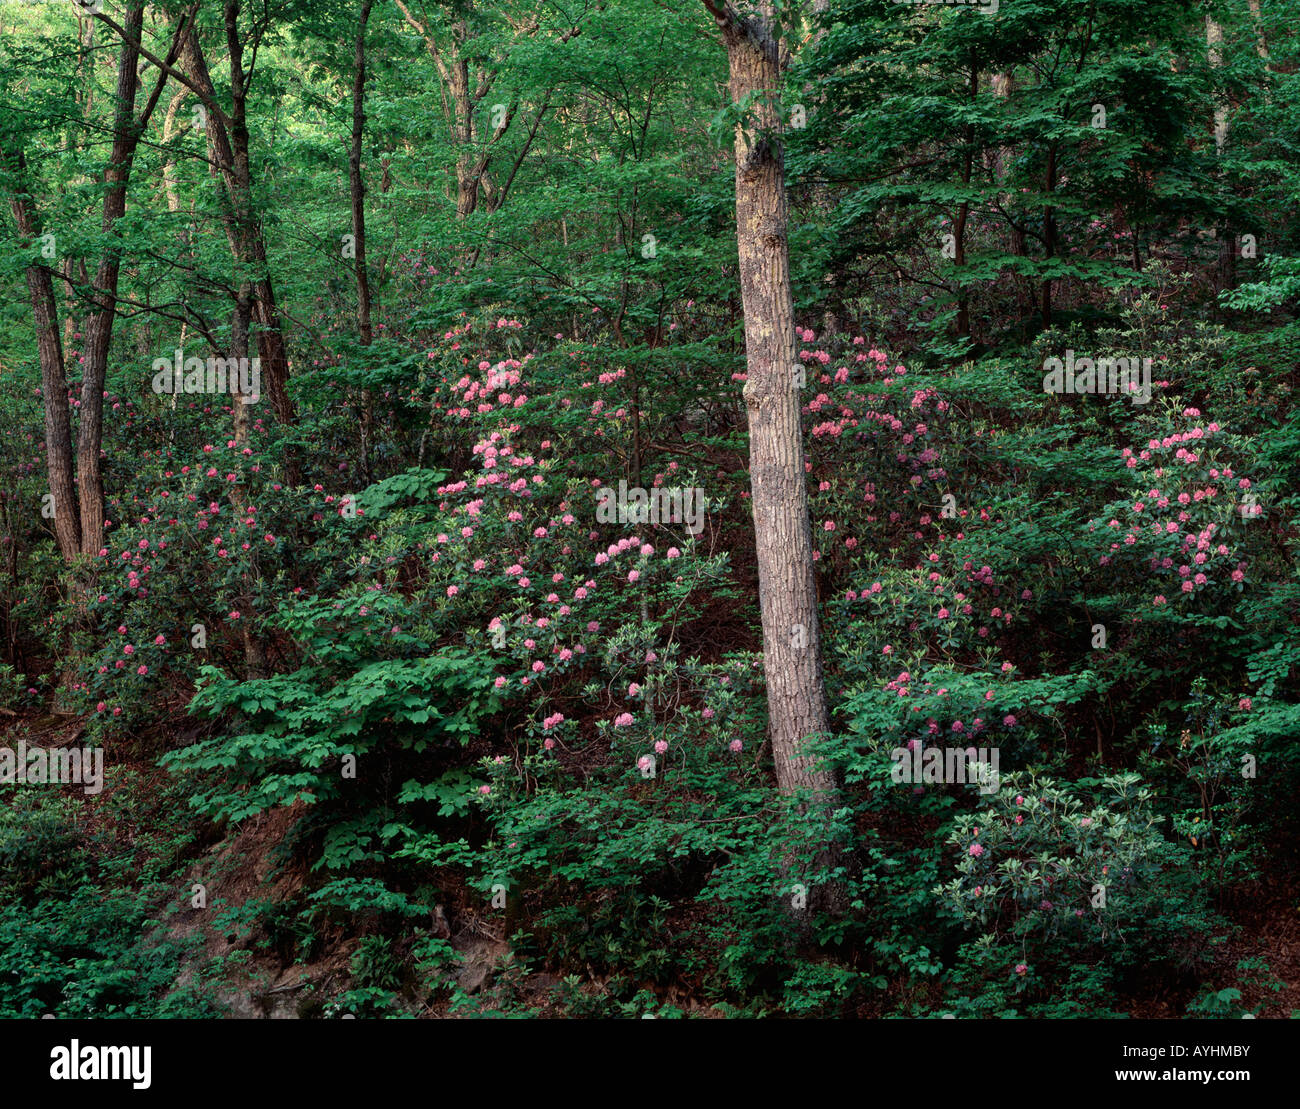 Mountain laurel et chêne arbre, montagne du nord, George Washington National Forest, Virginia USA Banque D'Images